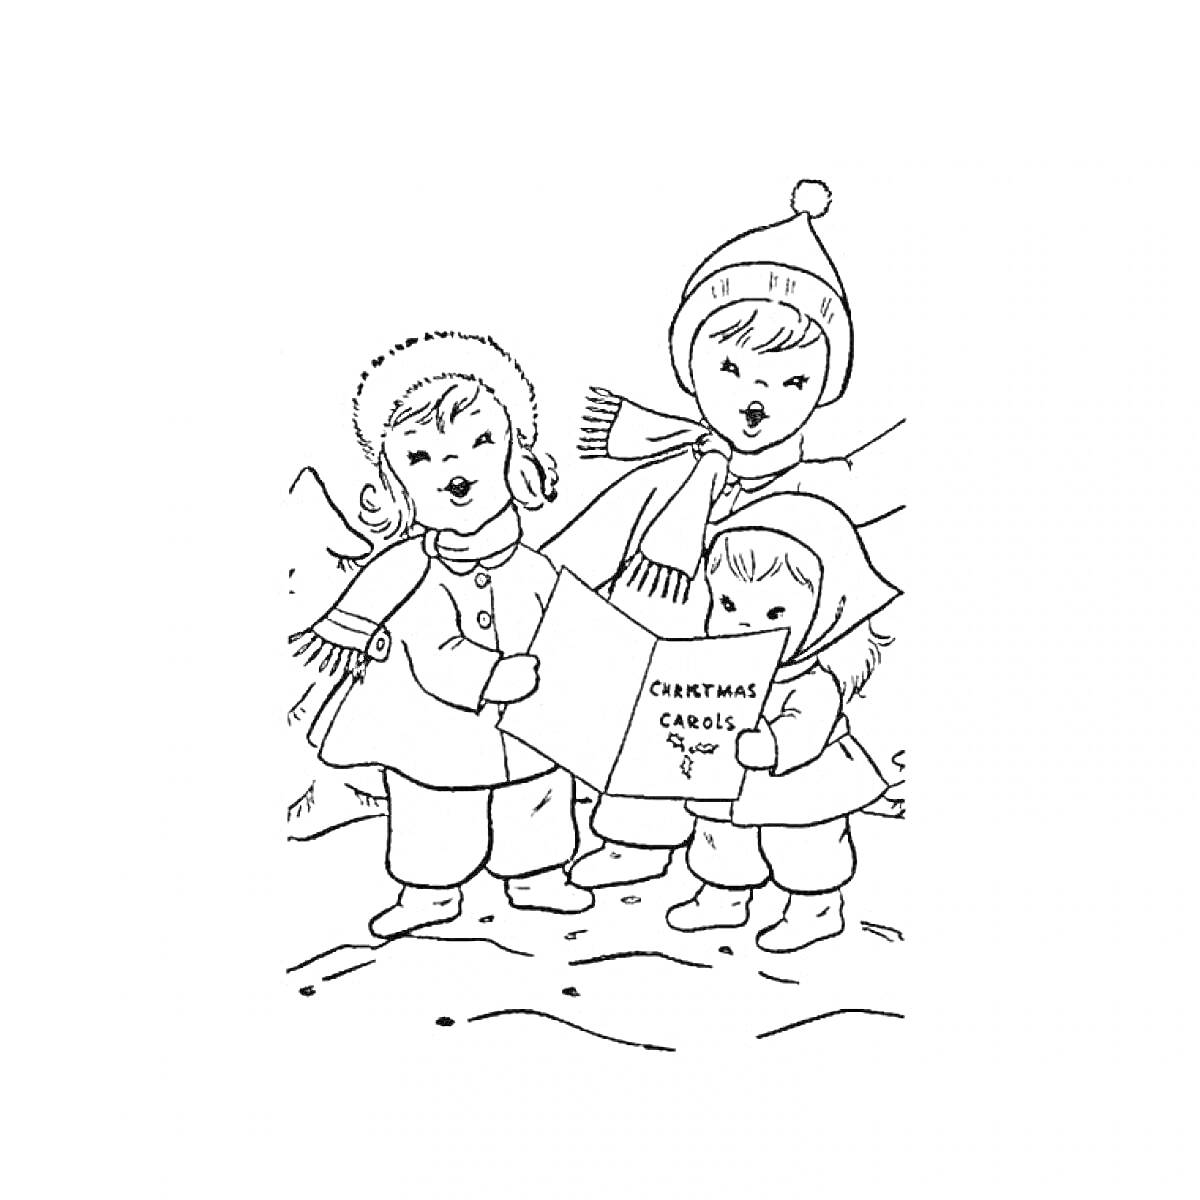 Раскраска Дети поют колядки на Рождество: три ребенка, один мальчик и две девочки, одеты в зимнюю одежду - шапки, шарфы и куртки, держат книги с колядками